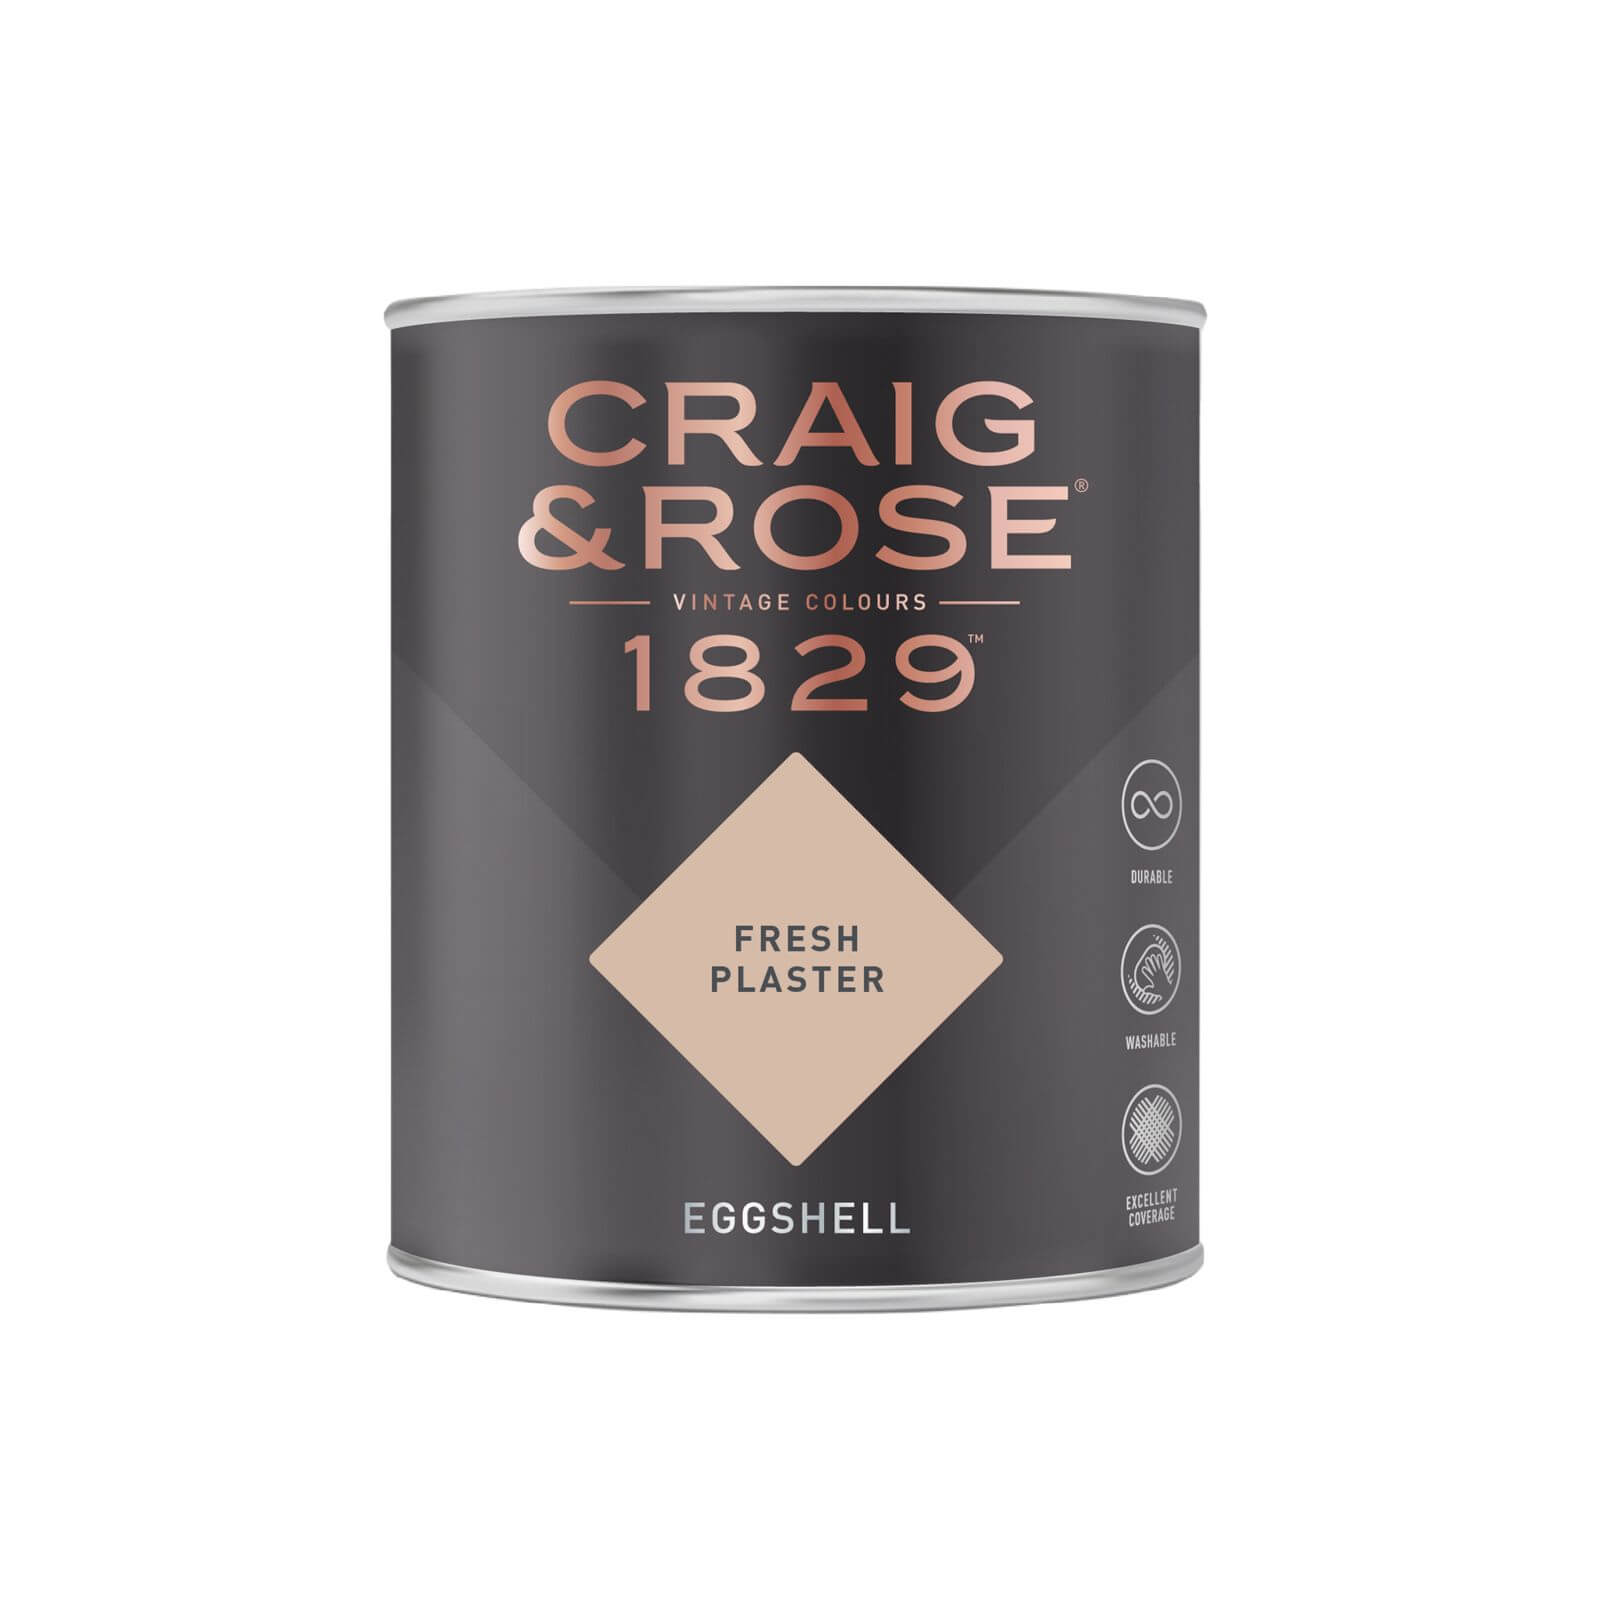 Craig & Rose 1829 Eggshell Paint Fresh Plaster - 750ml